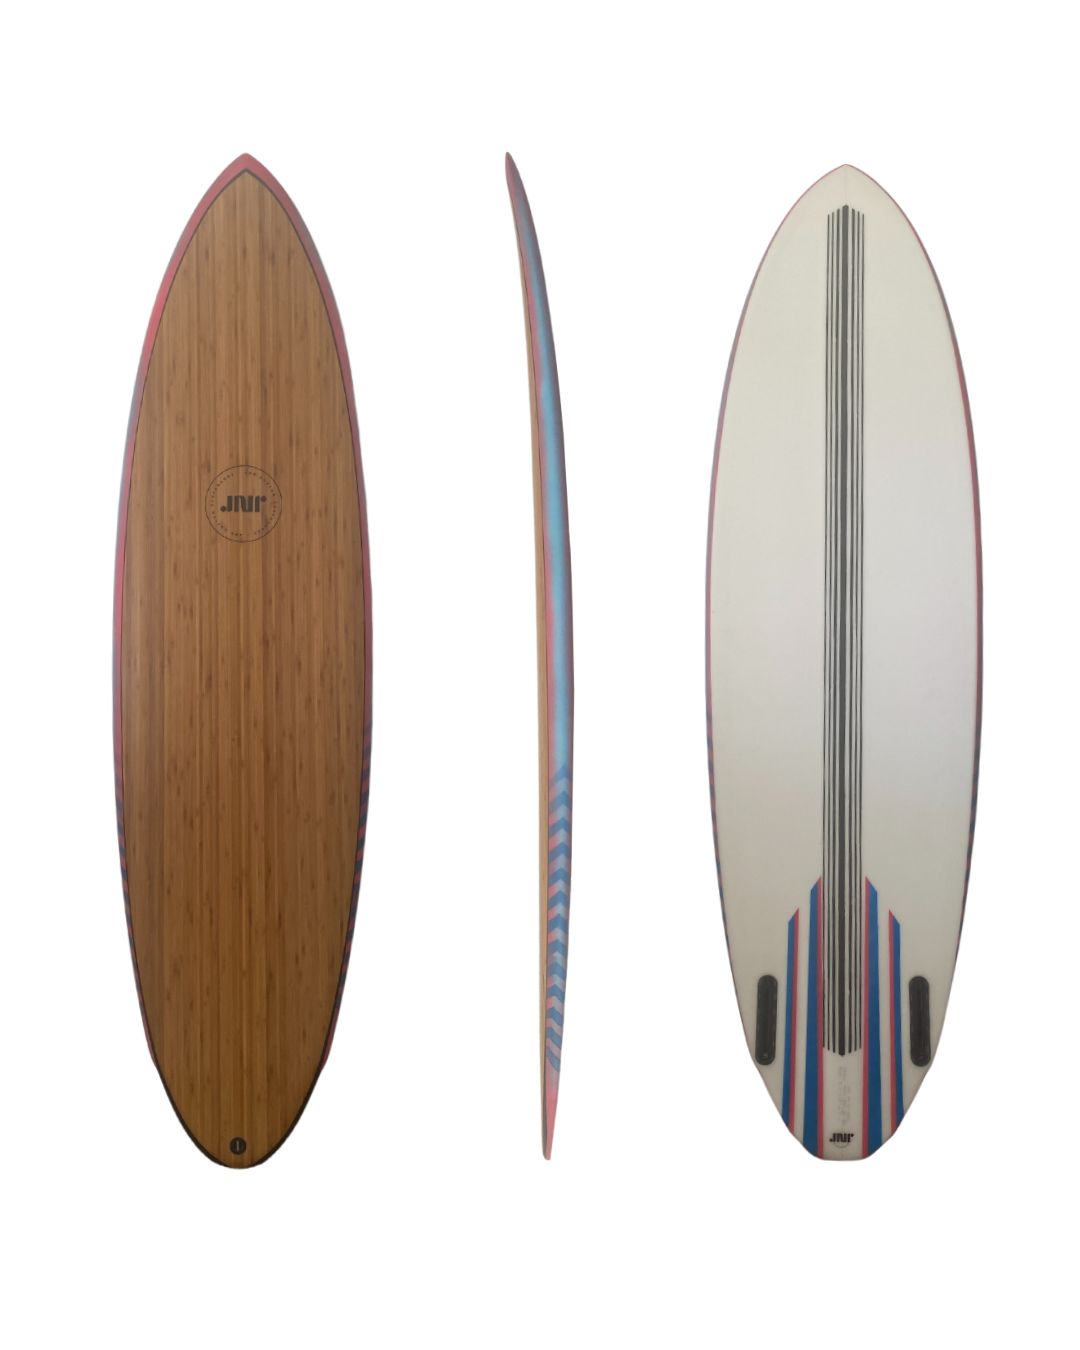 Shortboard - JNR Custom Surfboards, Surfboard Shaper Algarve